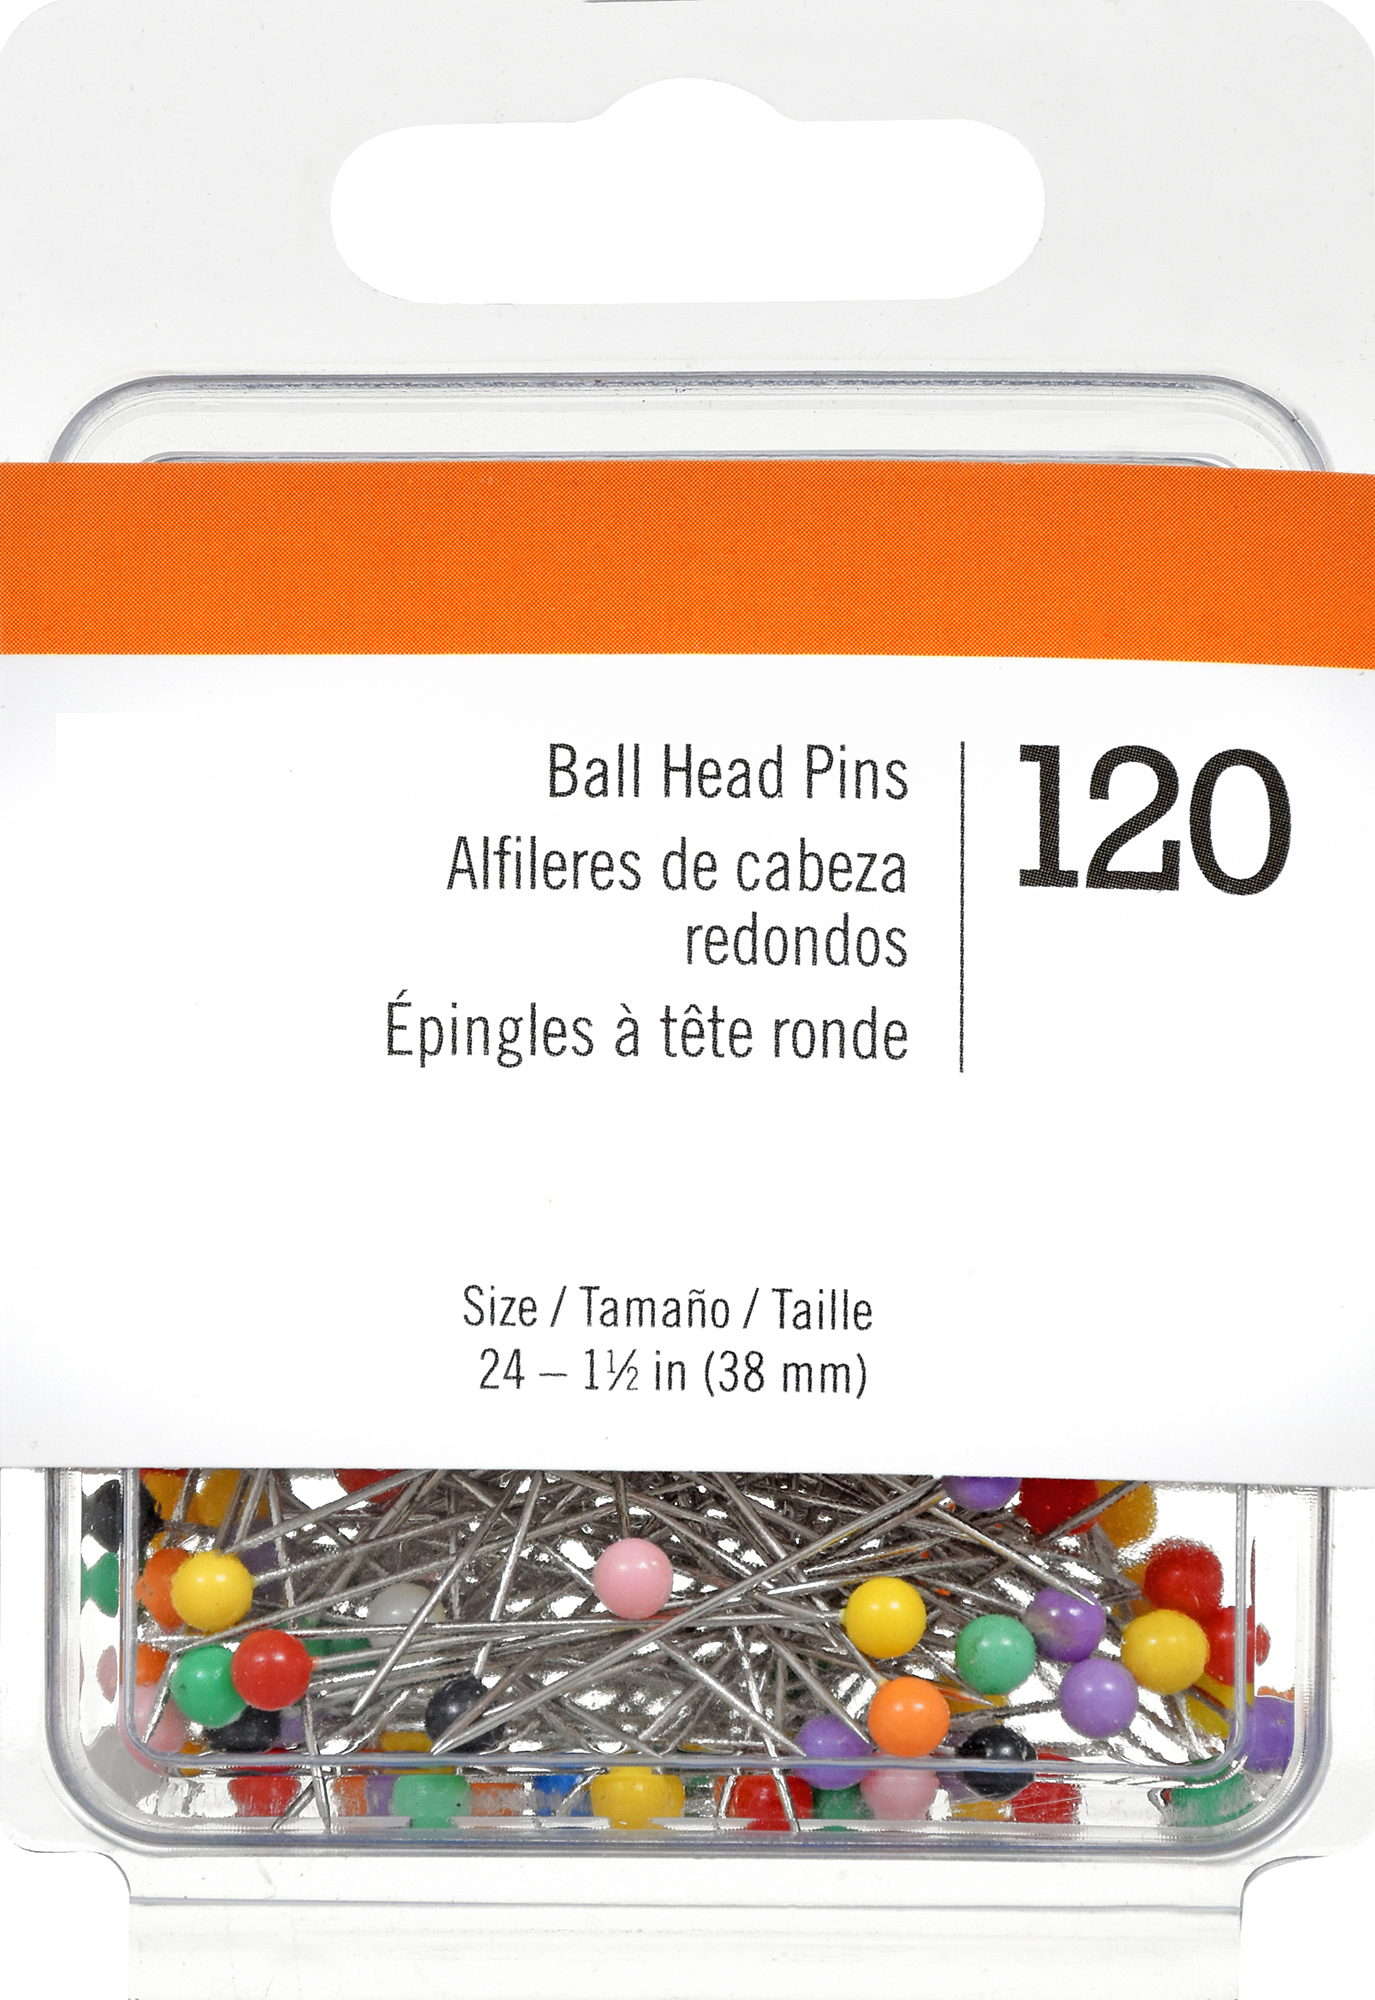 Ball Head Pins